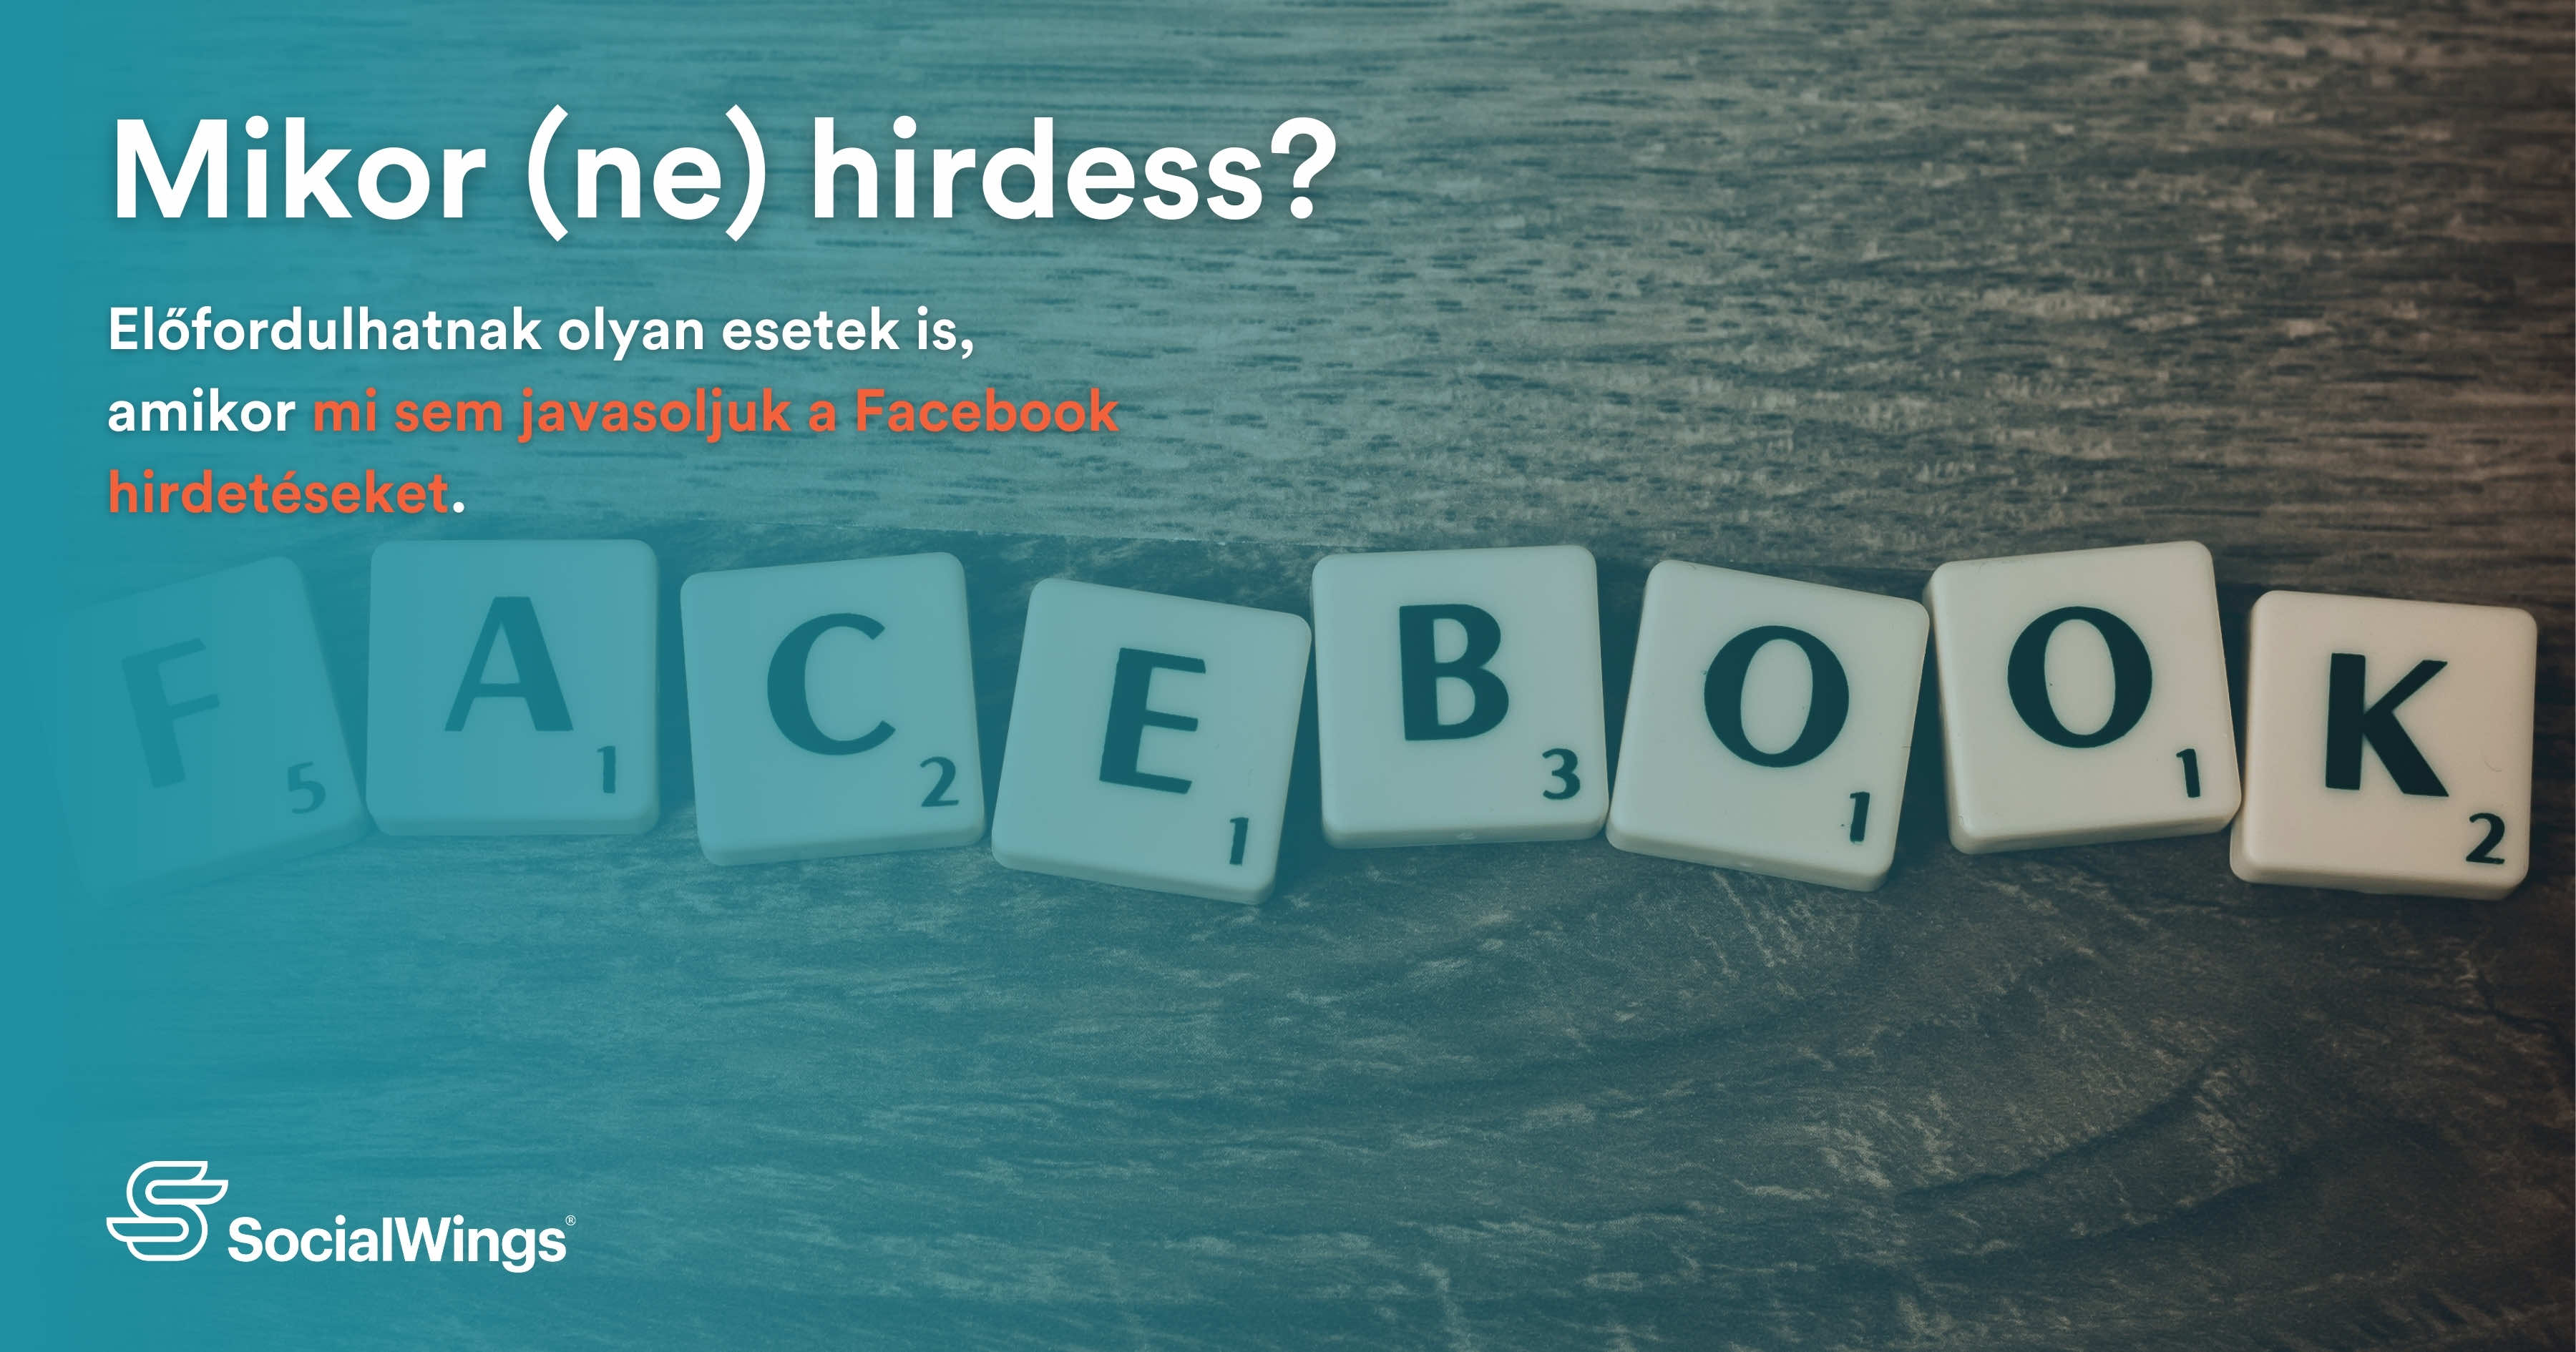 Mikor (ne) hirdess a Facebookon?: Milyen esetekben alkalmas és milyen esetekben kerülendő eszköz a Facebook hirdetés a vállalkozások számára?